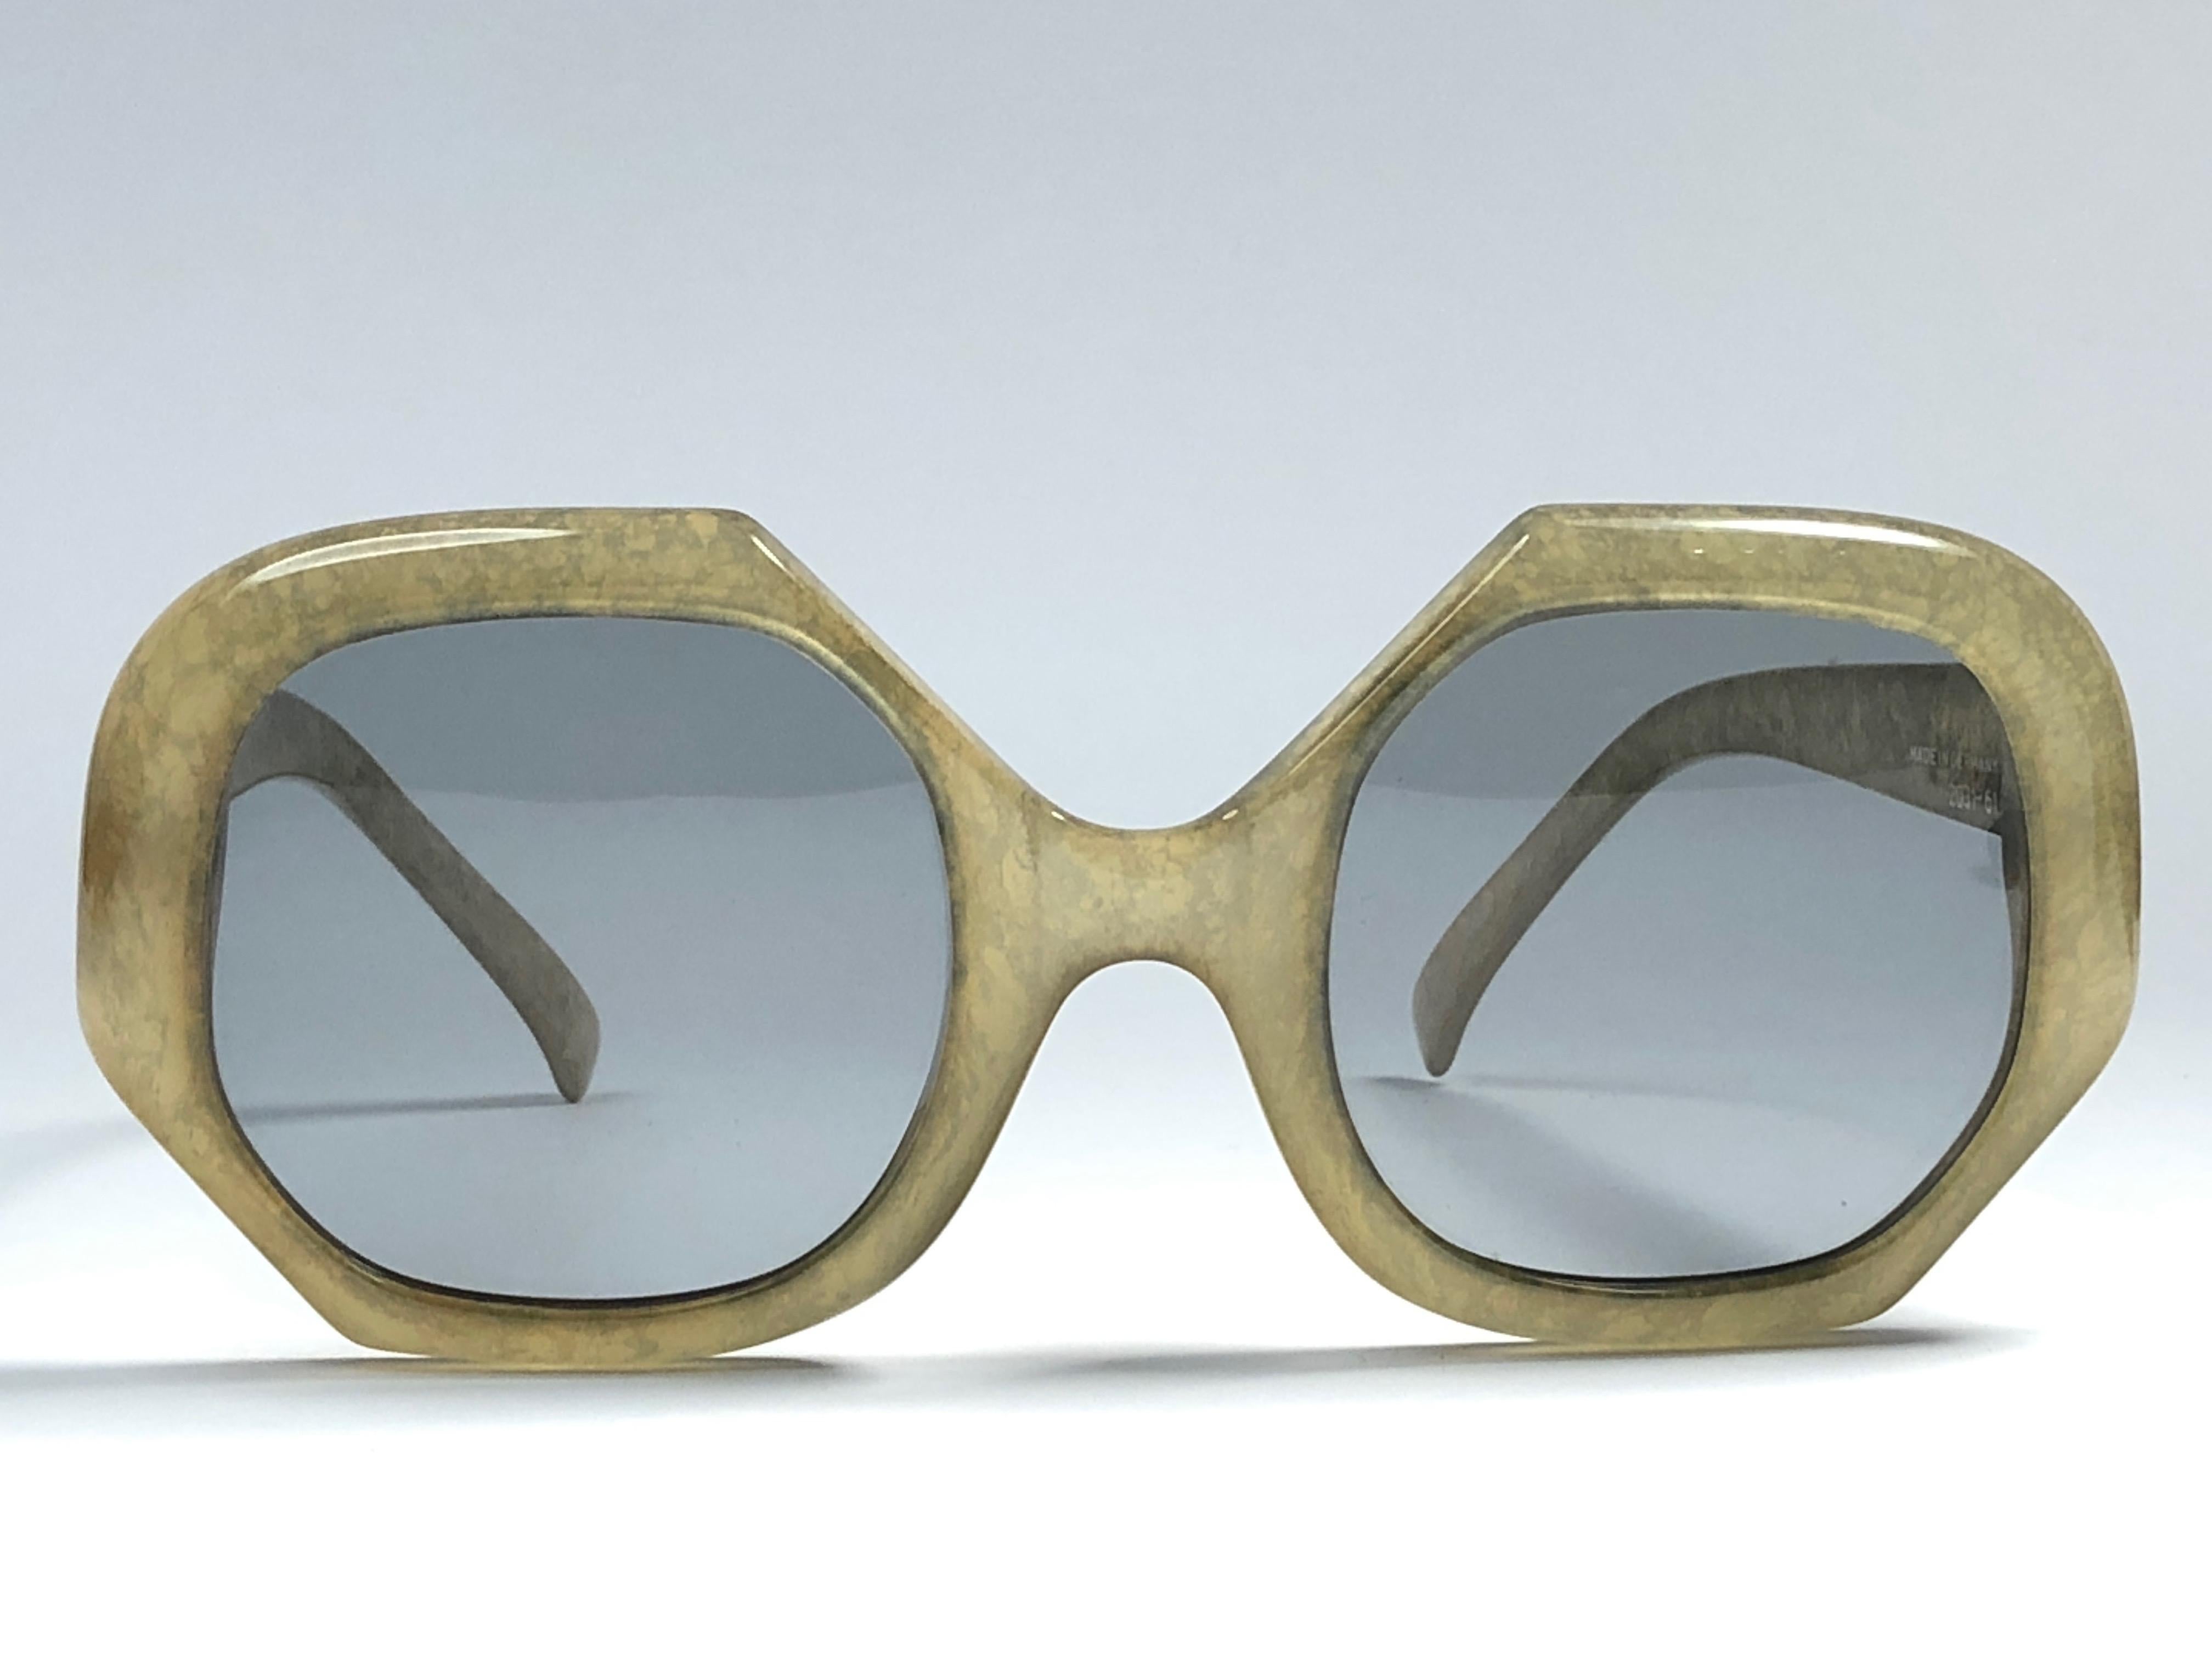 Neu Vintage Christian Dior 2031 61 Jasped lindgrüner Rahmen mit makellosen hellen Gläsern.   
Hergestellt in Deutschland.  Produziert und entworfen in den 1970er Jahren.  
Ein Sammlerstück!  Neu, nie getragen oder ausgestellt. 
Kommt mit seiner